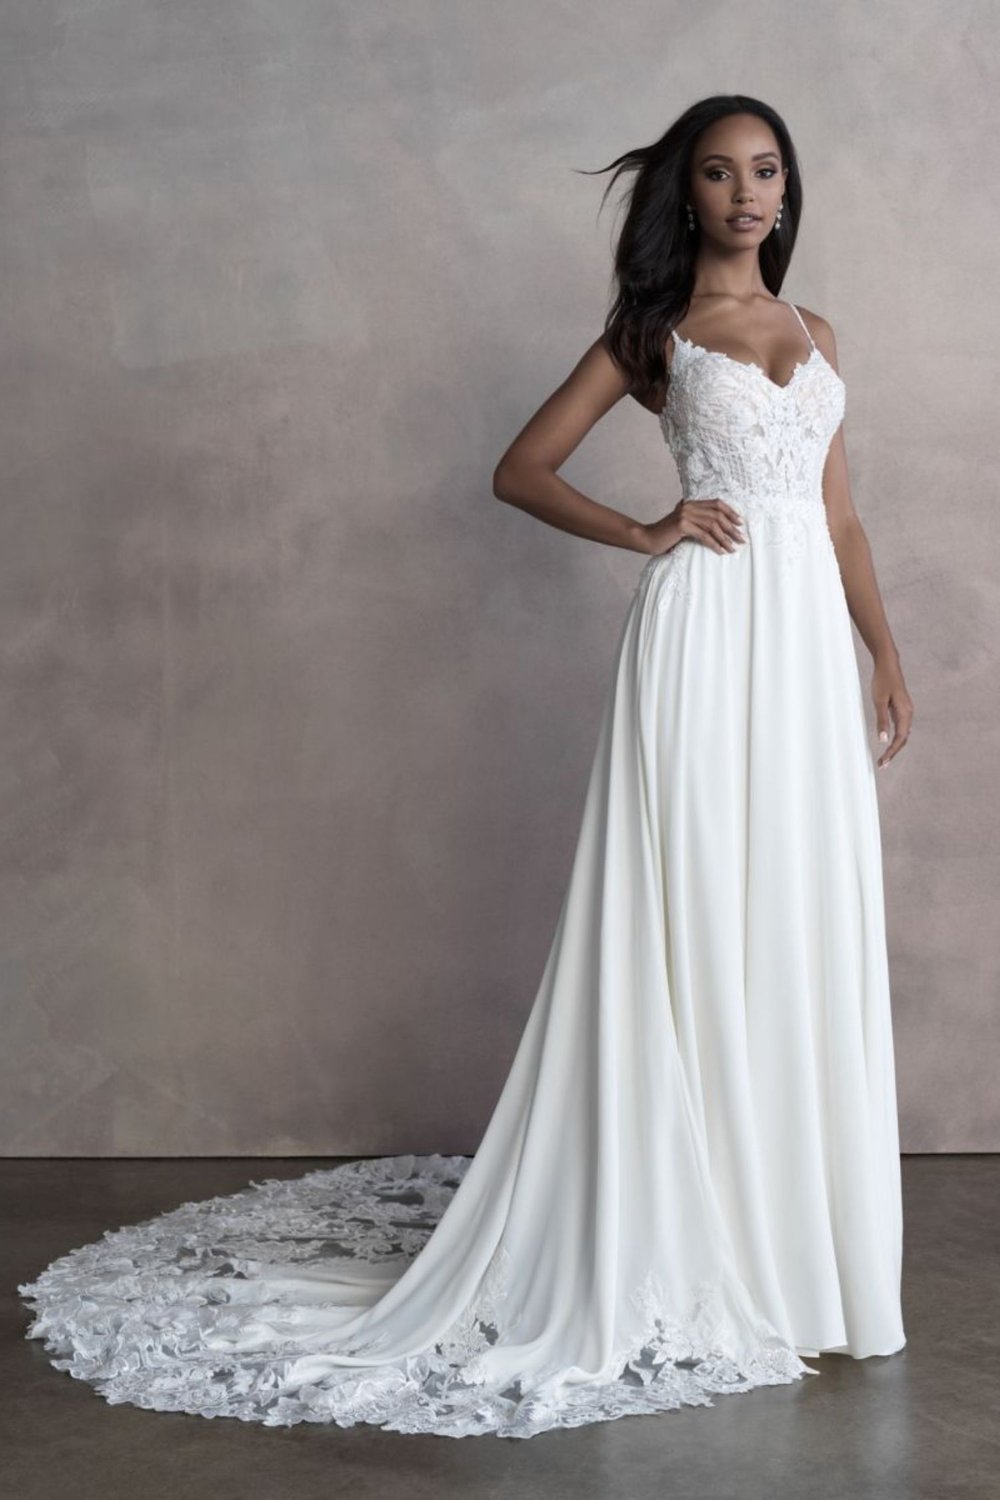 Allure 9807 Wedding Dress for sale in Sacramento  Designer Sample, Size  10, $1470 — Olive & Ivory